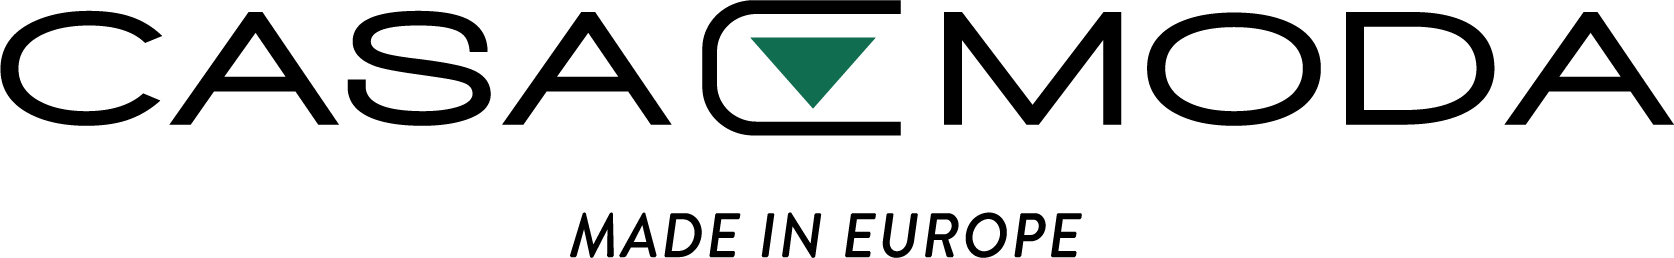 CASAMODA logo značky